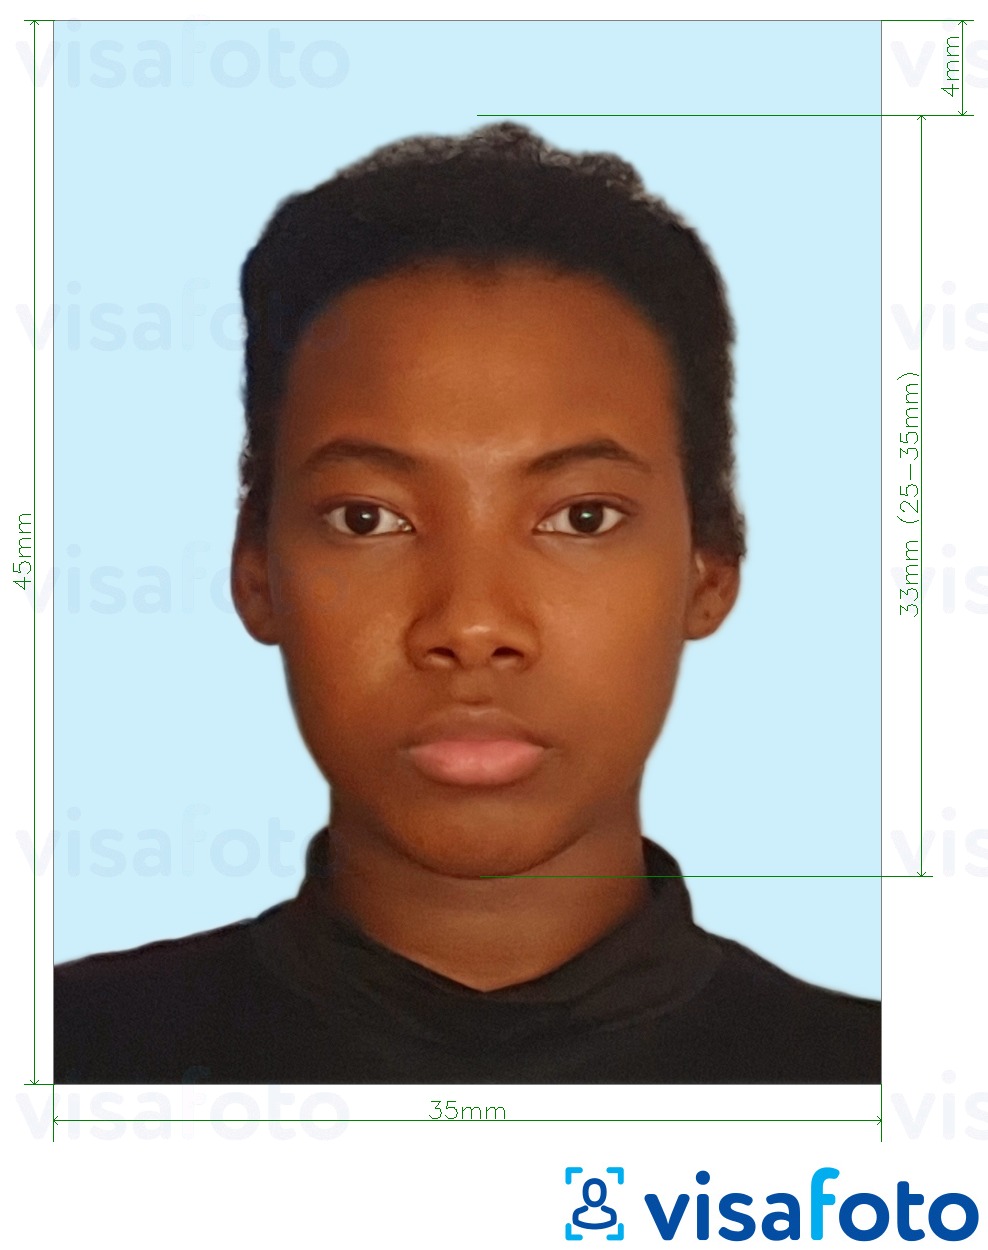 Fotobeispiel für Jamaika Pass 35x45 mm hellblauen Hintergrund mit genauer größenangabe